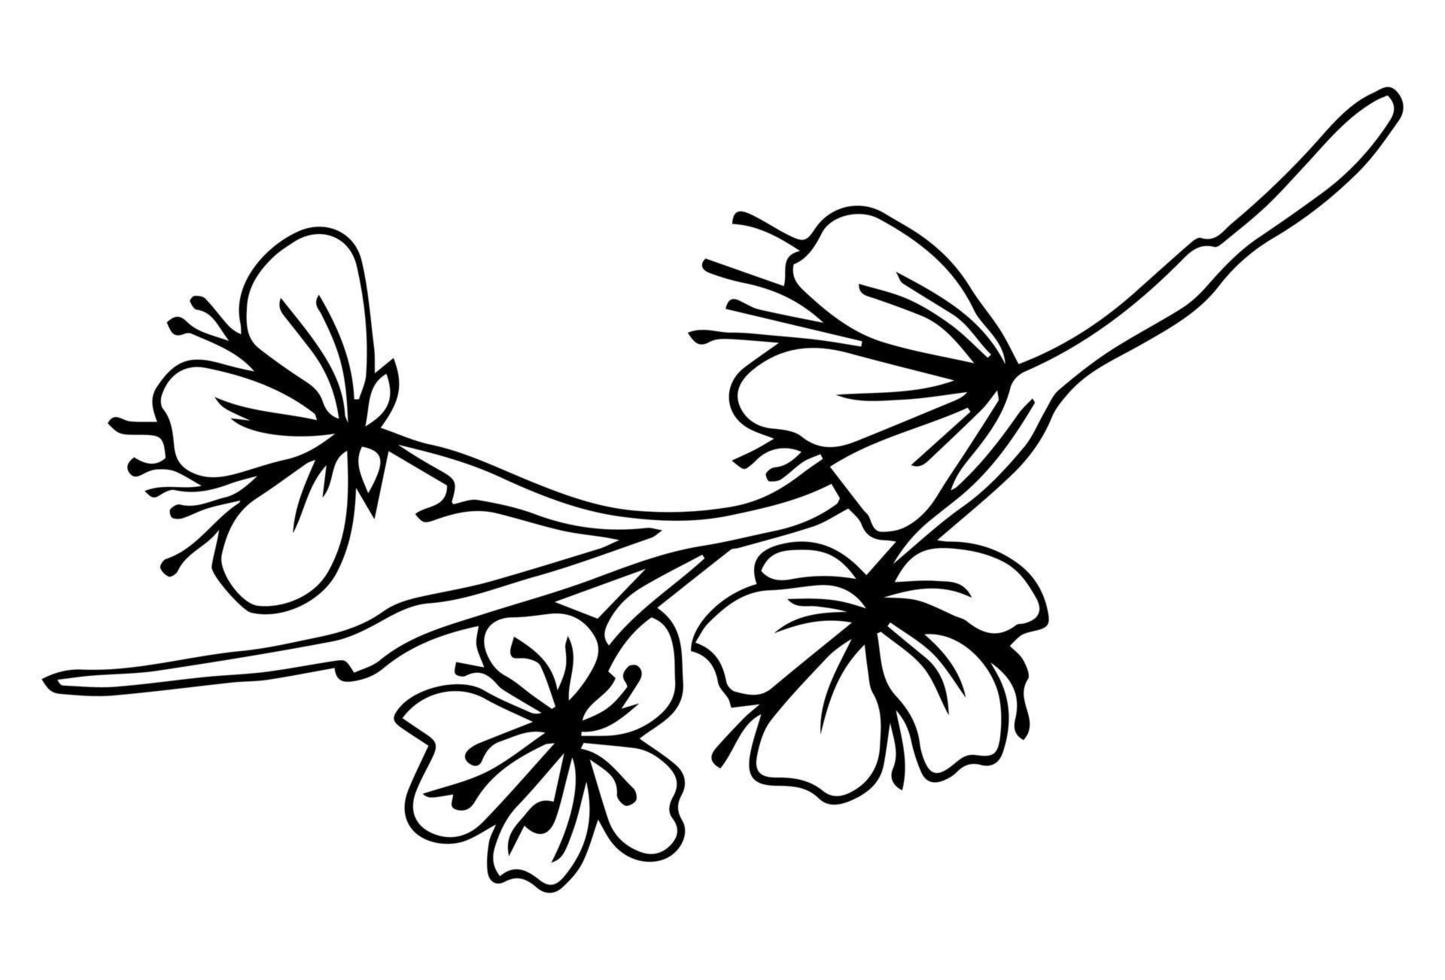 fiori di sakura sbocciano, stile inchiostro linea disegnata a mano. carino doodle cherry illustrazione vettoriale, nero isolato su sfondo bianco. vettore